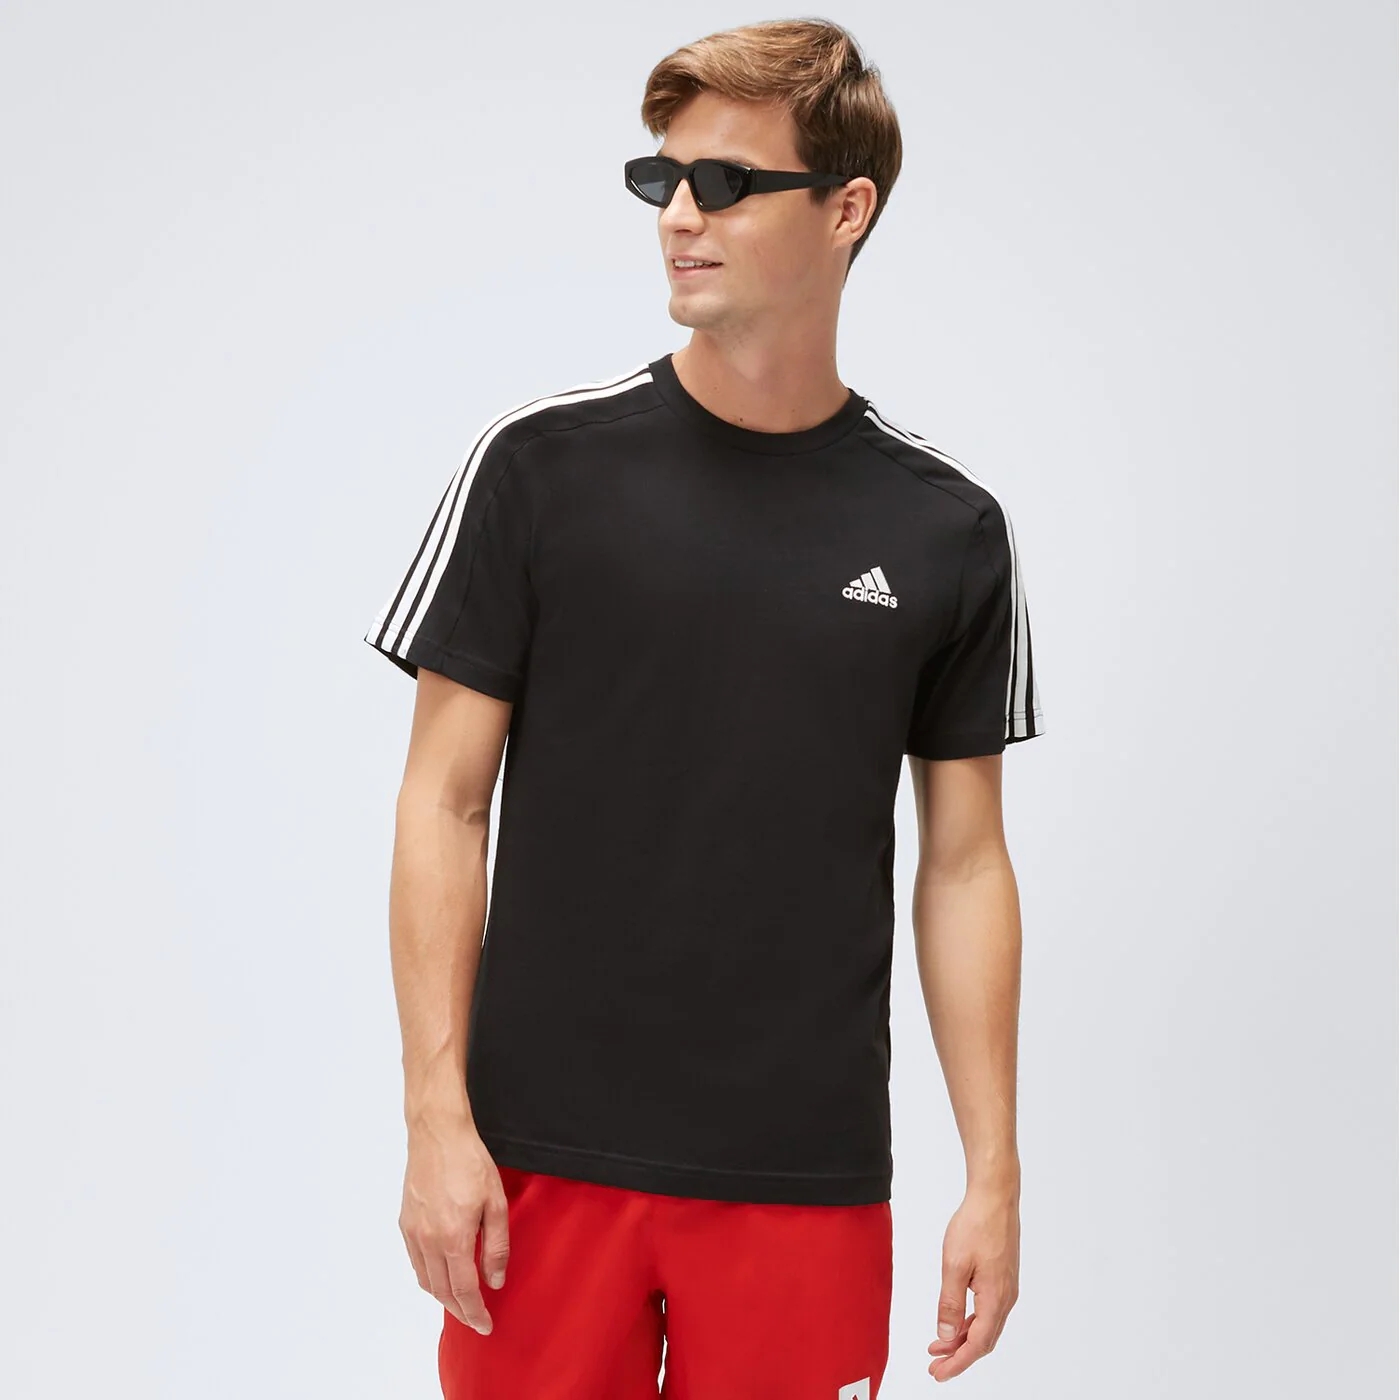 Футболка Adidas с коротким рукавом, черный / белый футболка с коротким рукавом adidas agr белый